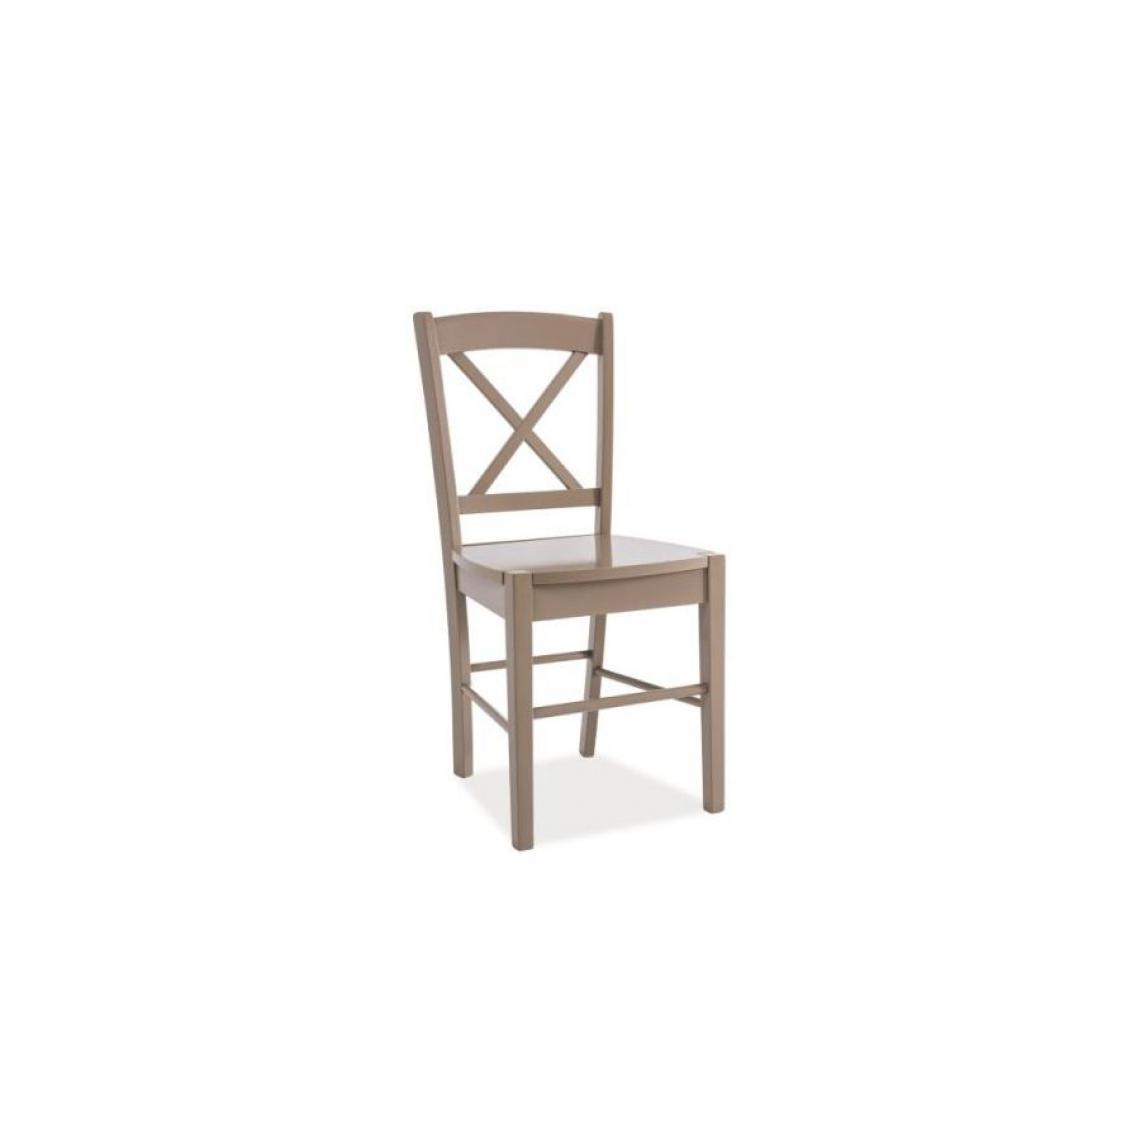 Hucoco - EDIU | Chaise en bois salle à manger salon cusine | Dimensions 85x40x36 cm | Design classique | Construction en bois massif - Beige - Chaises